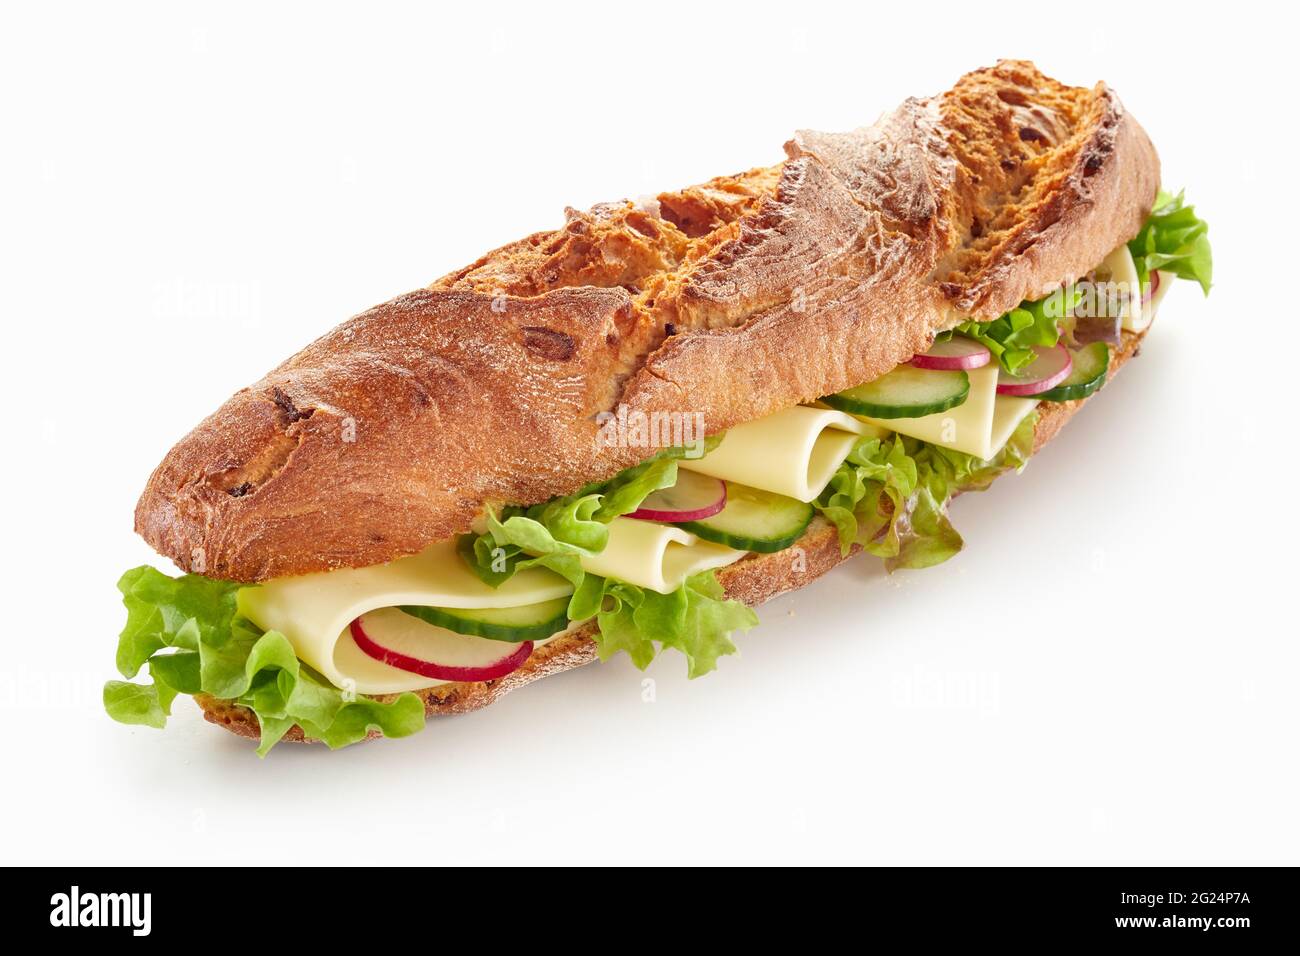 Von oben appetitlich Baguette Sandwich mit Käse und Gemüse auf weißem Tisch gelegt Stockfoto